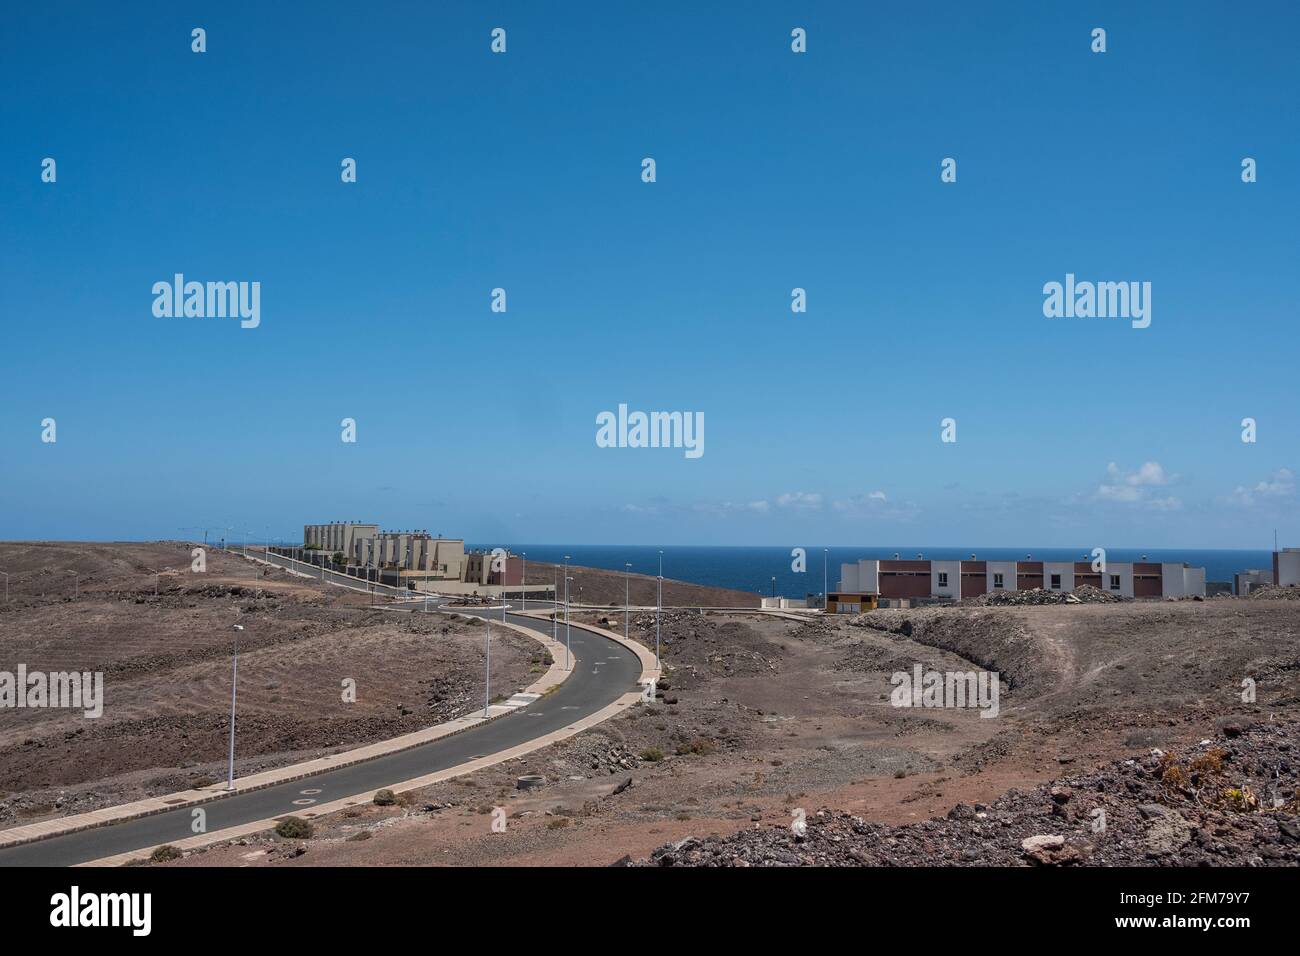 Gran Canaria, eine spanische Kanarische Insel vor der Nordwestküste von Afrika. Geldanlage-Neubausiedlung an der Westküste. Stock Photo